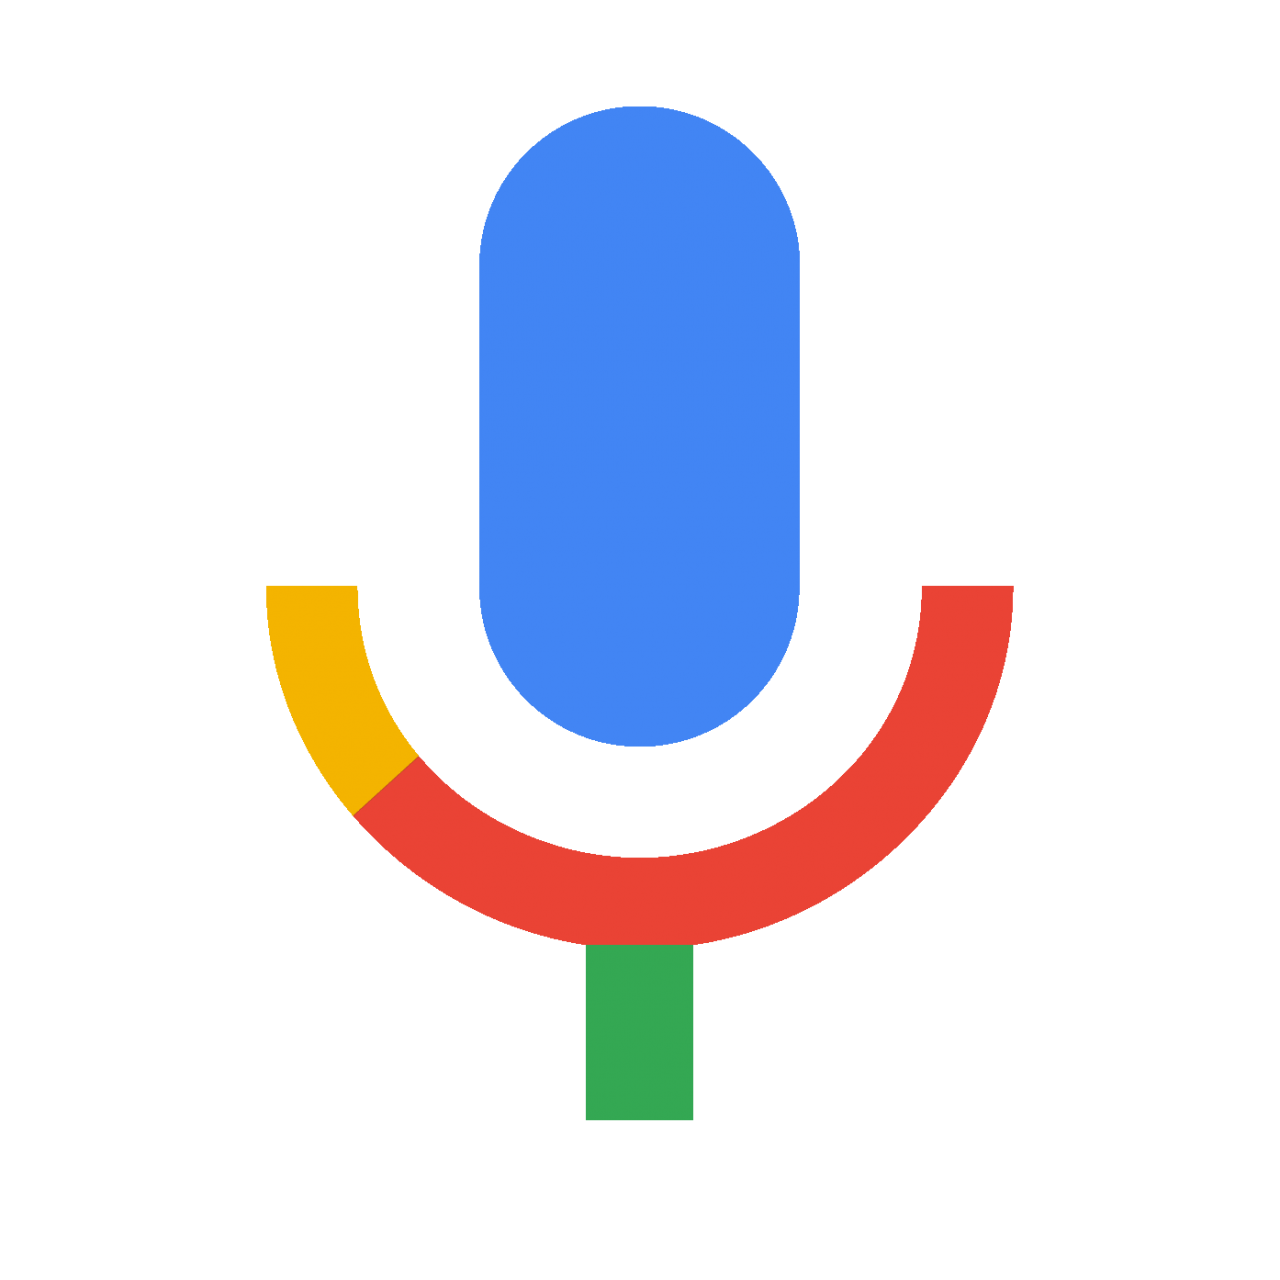 Google migliora la tecnologia di riconoscimento vocale su Android e iOS